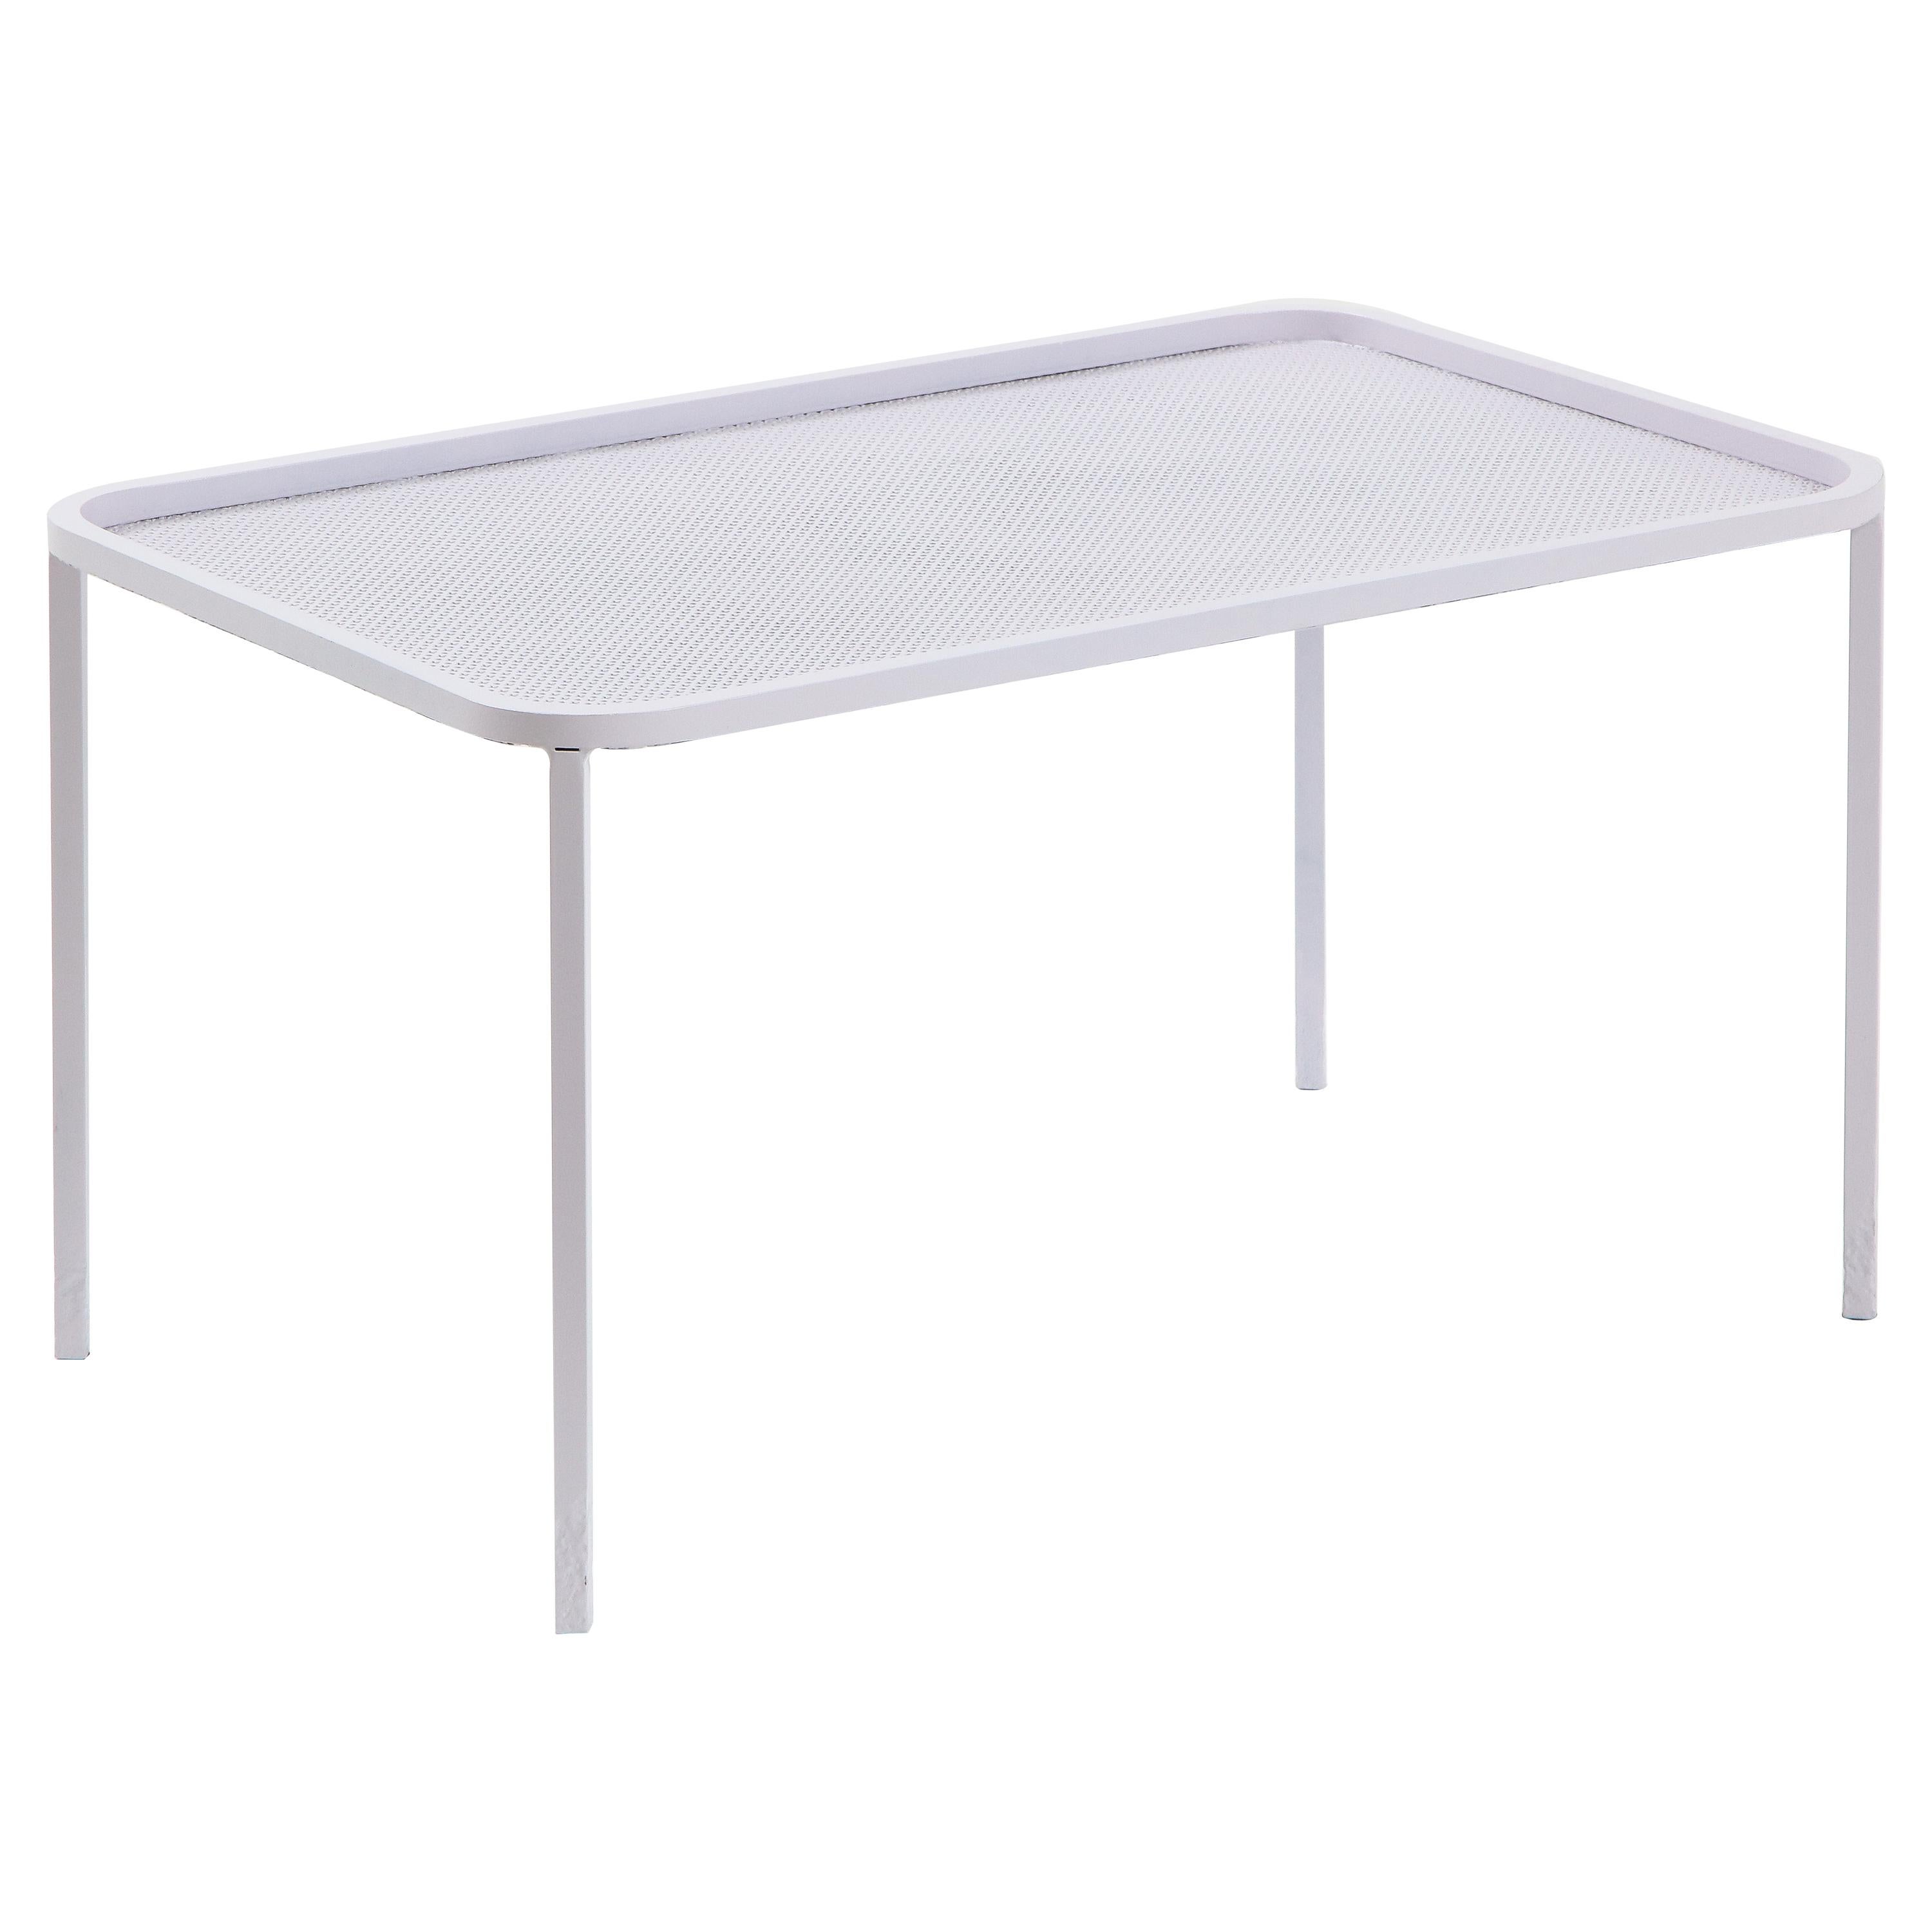 Mathieu Matégot Table basse rectangulaire en métal perforé blanc